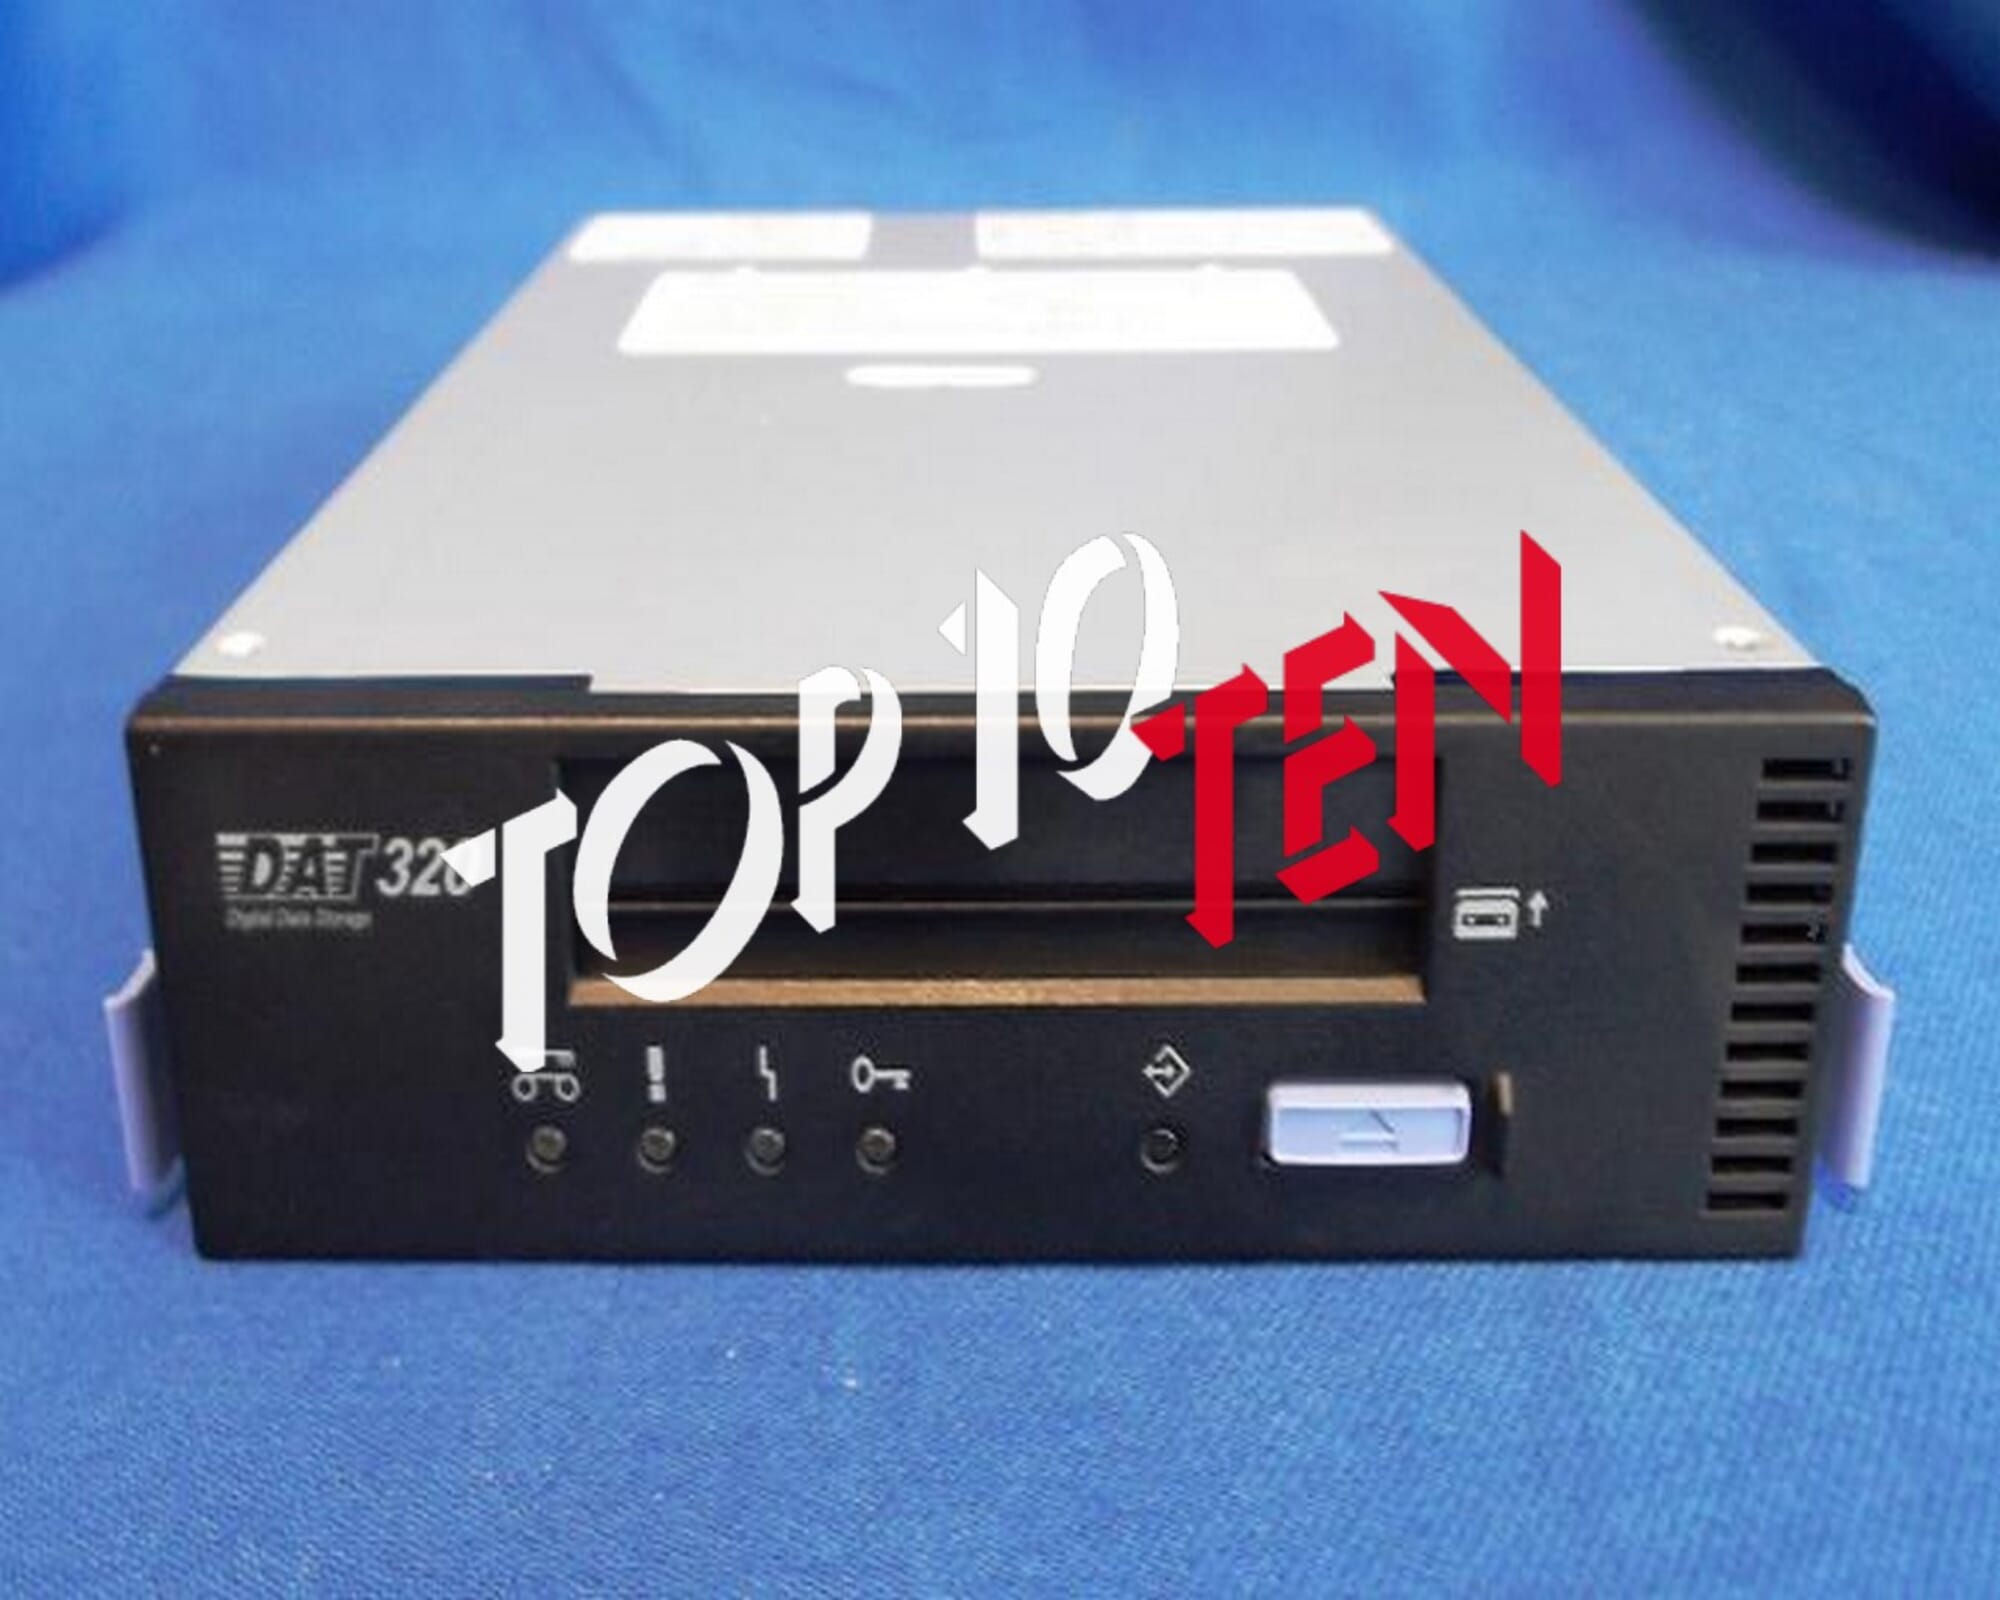 Nøjagtighed Udfordring Integration IBM 820X-5661 DAT-320 SAS Standalone internal Tape Drive 160GB 320GB